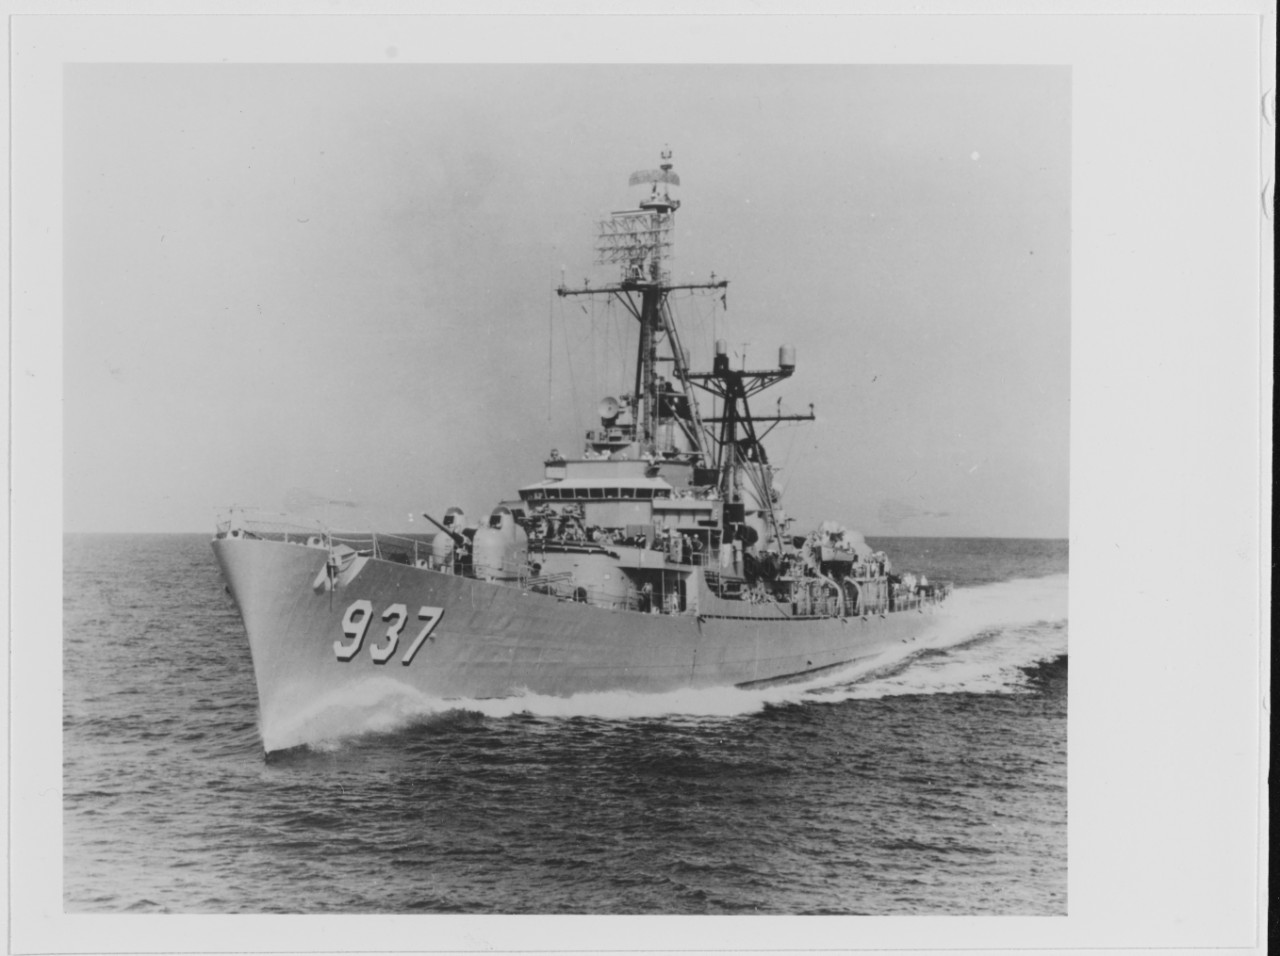 USS DAVIS (DD-937) underway, circa 1950s